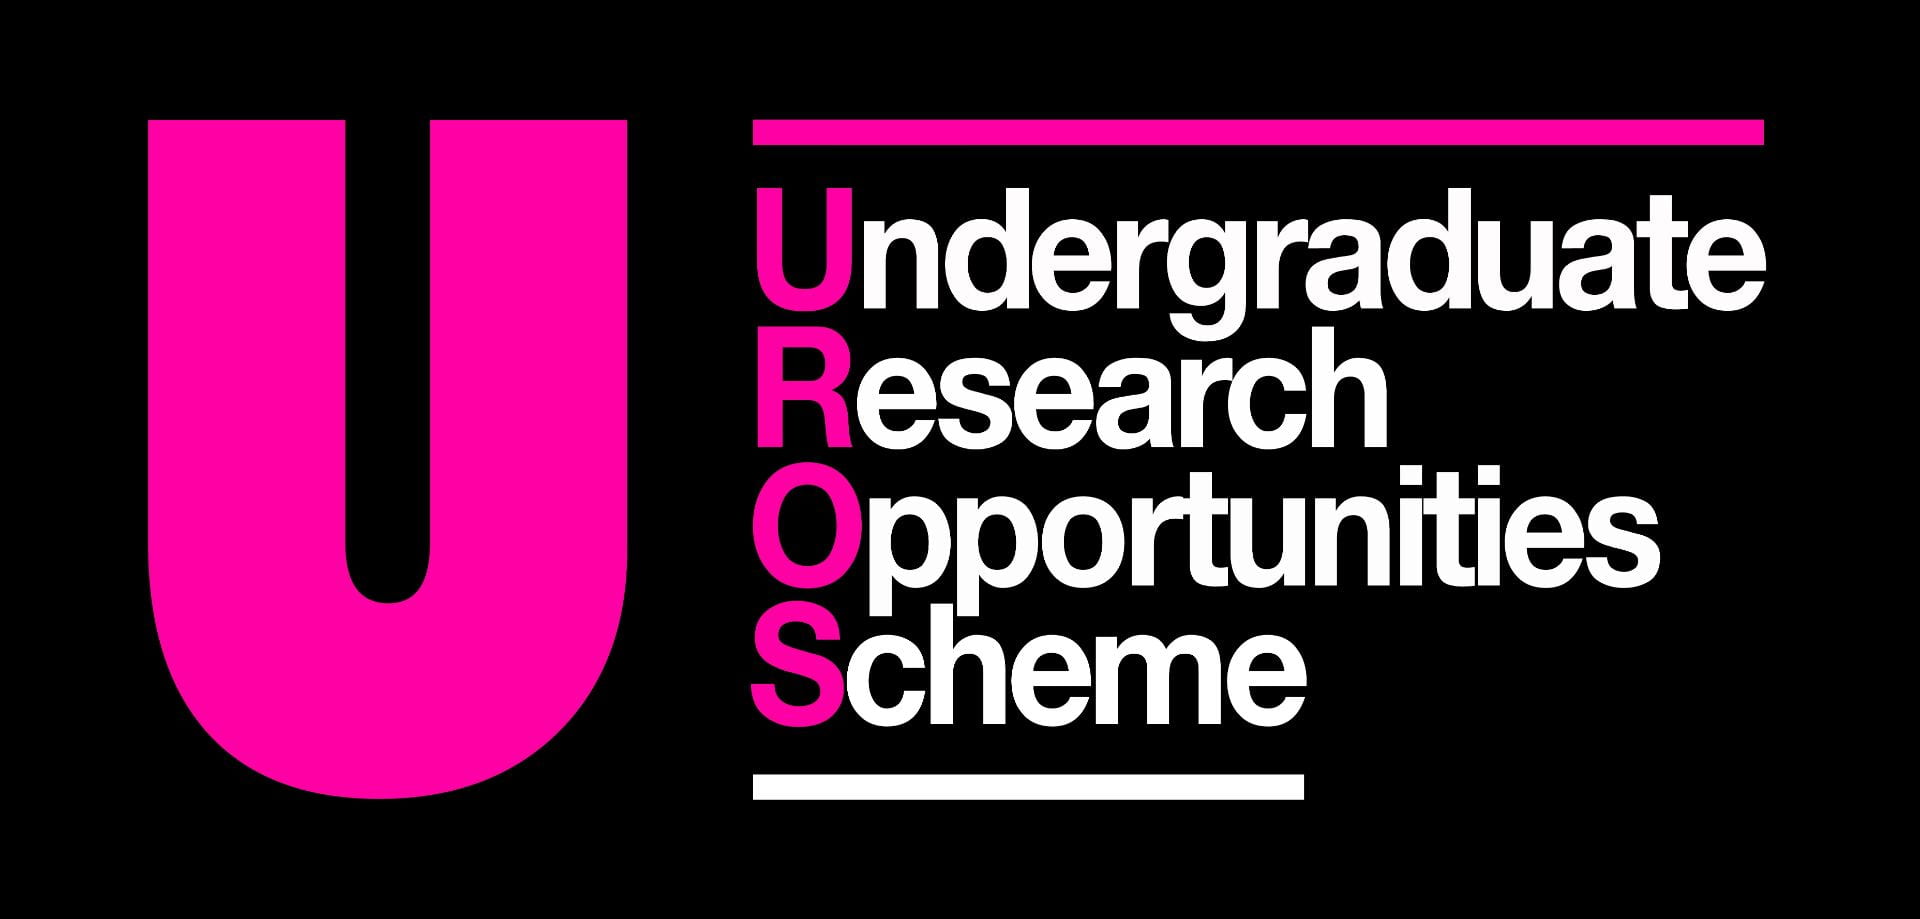 UROS Logo